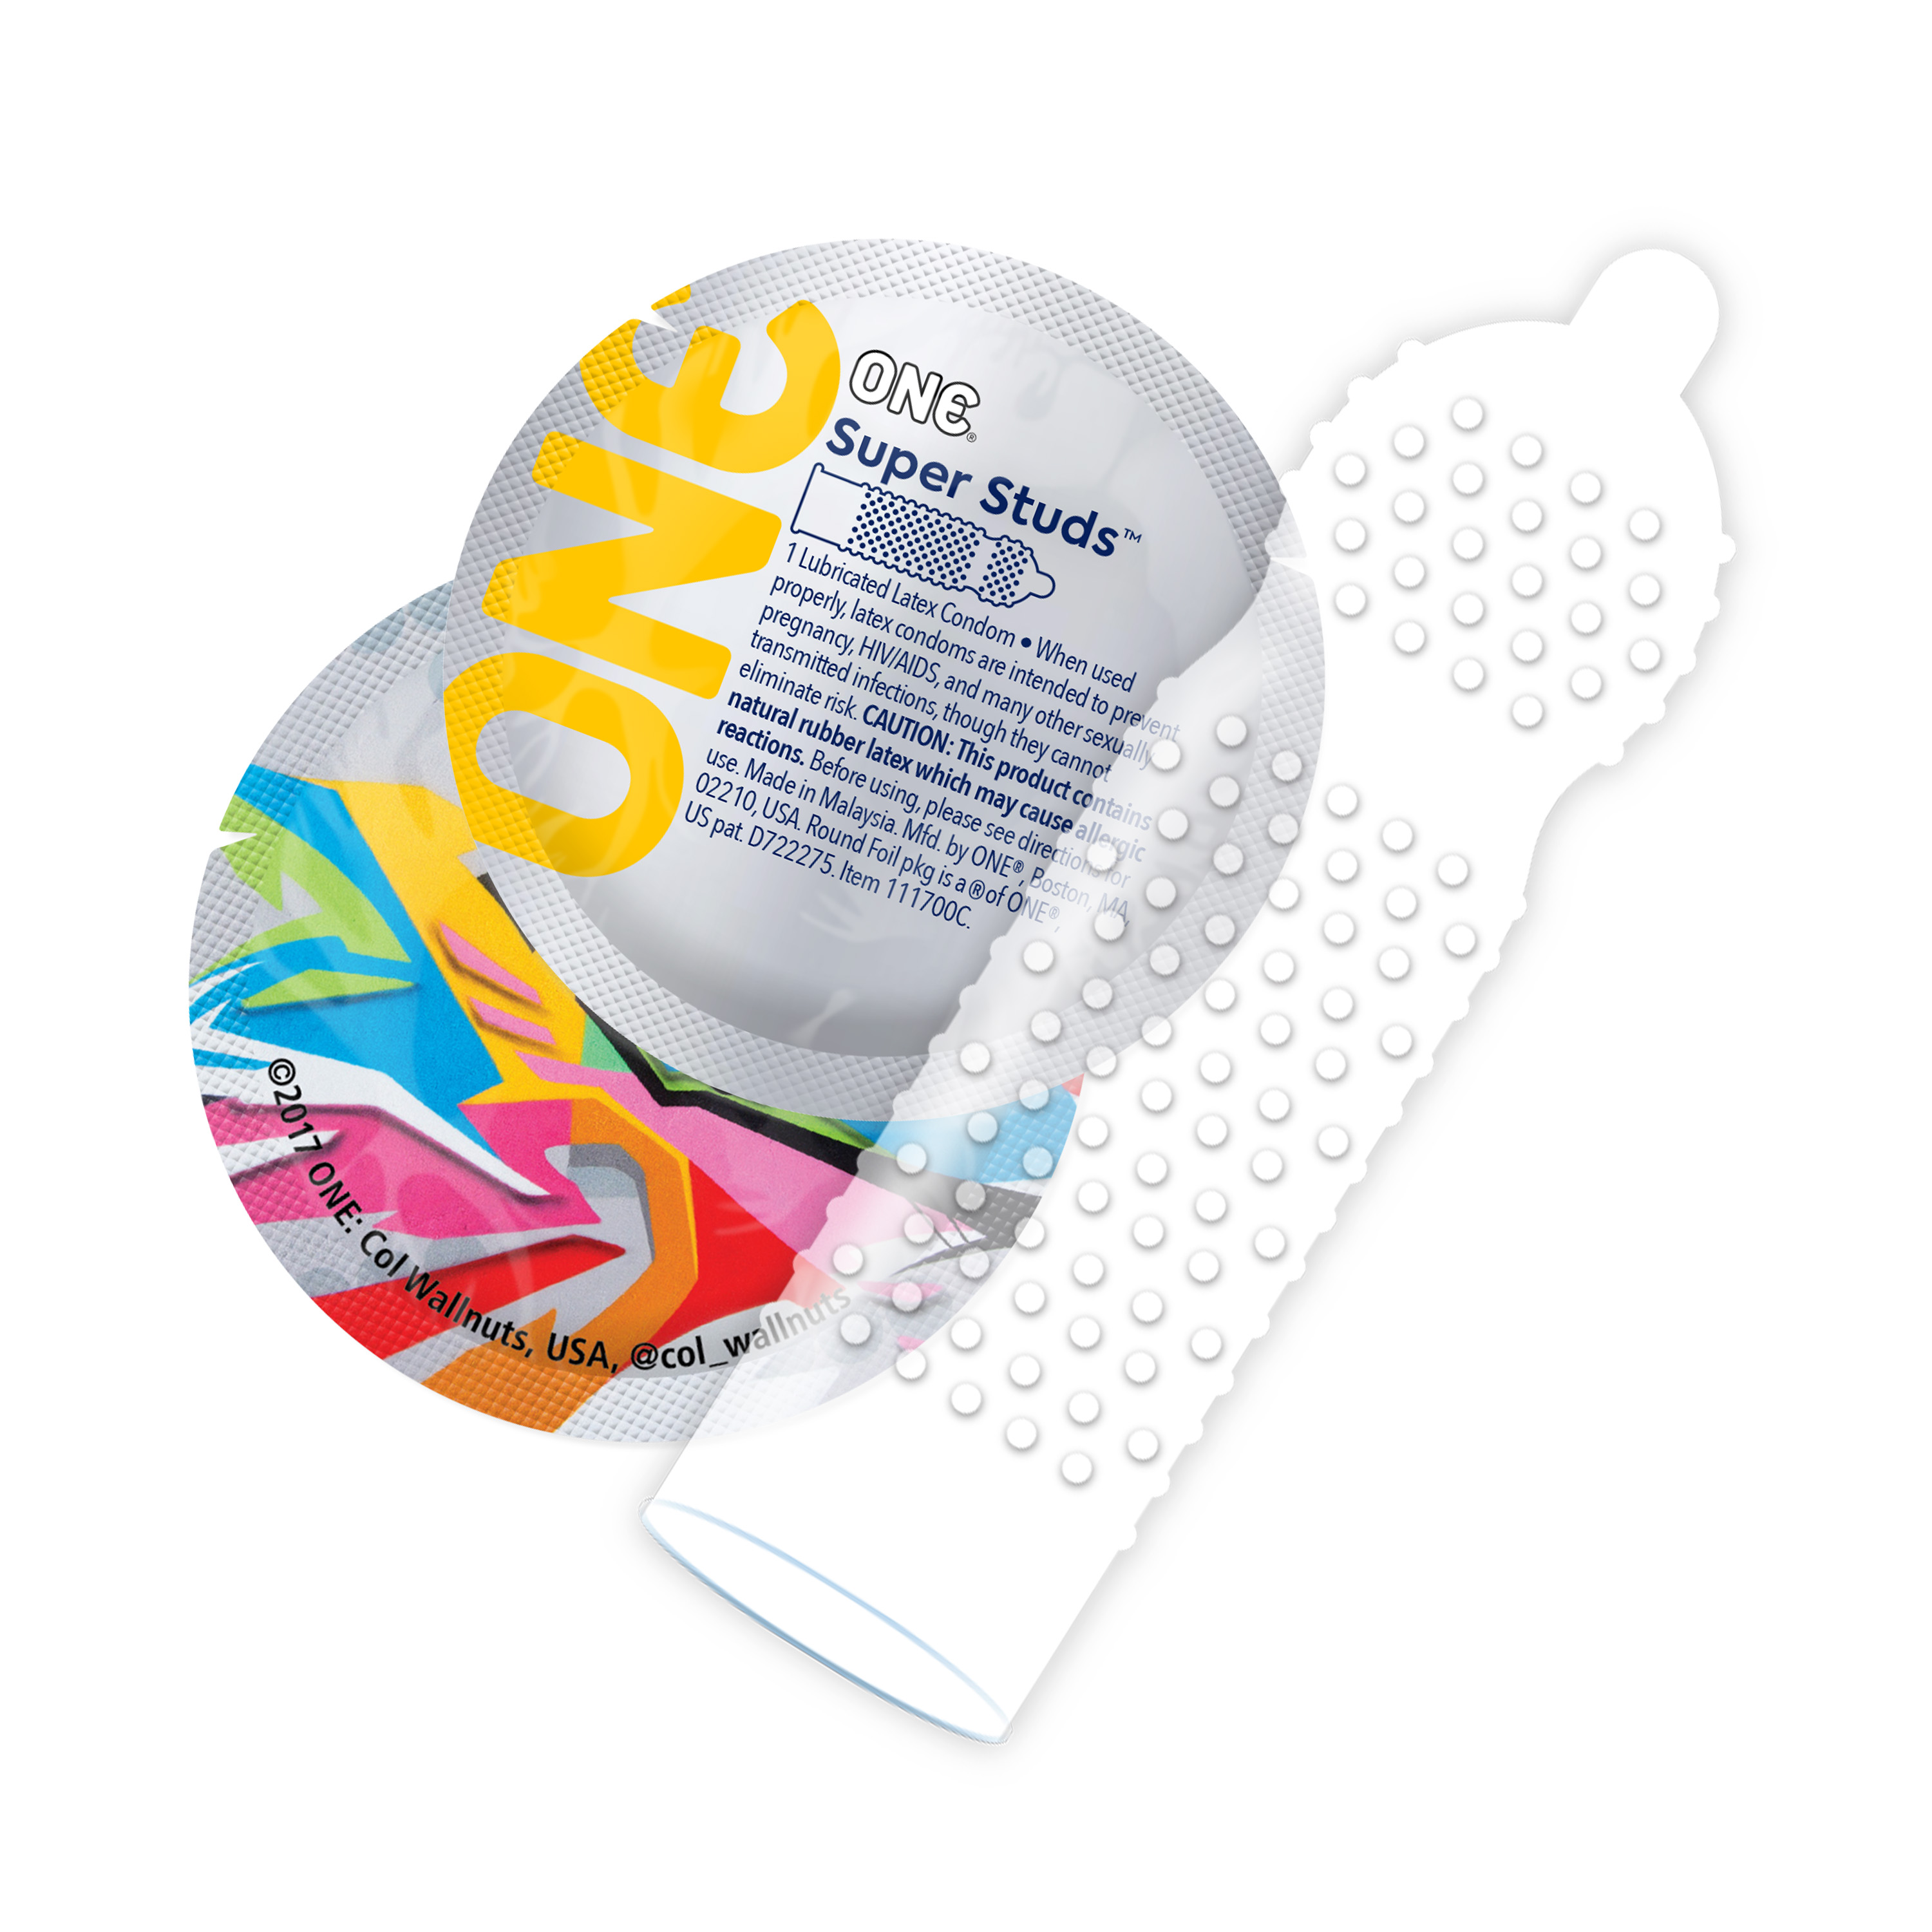 ONE «Super Studs» 12 genoppte Kondome - vegan & ohne schädlichen Inhaltsstoffe